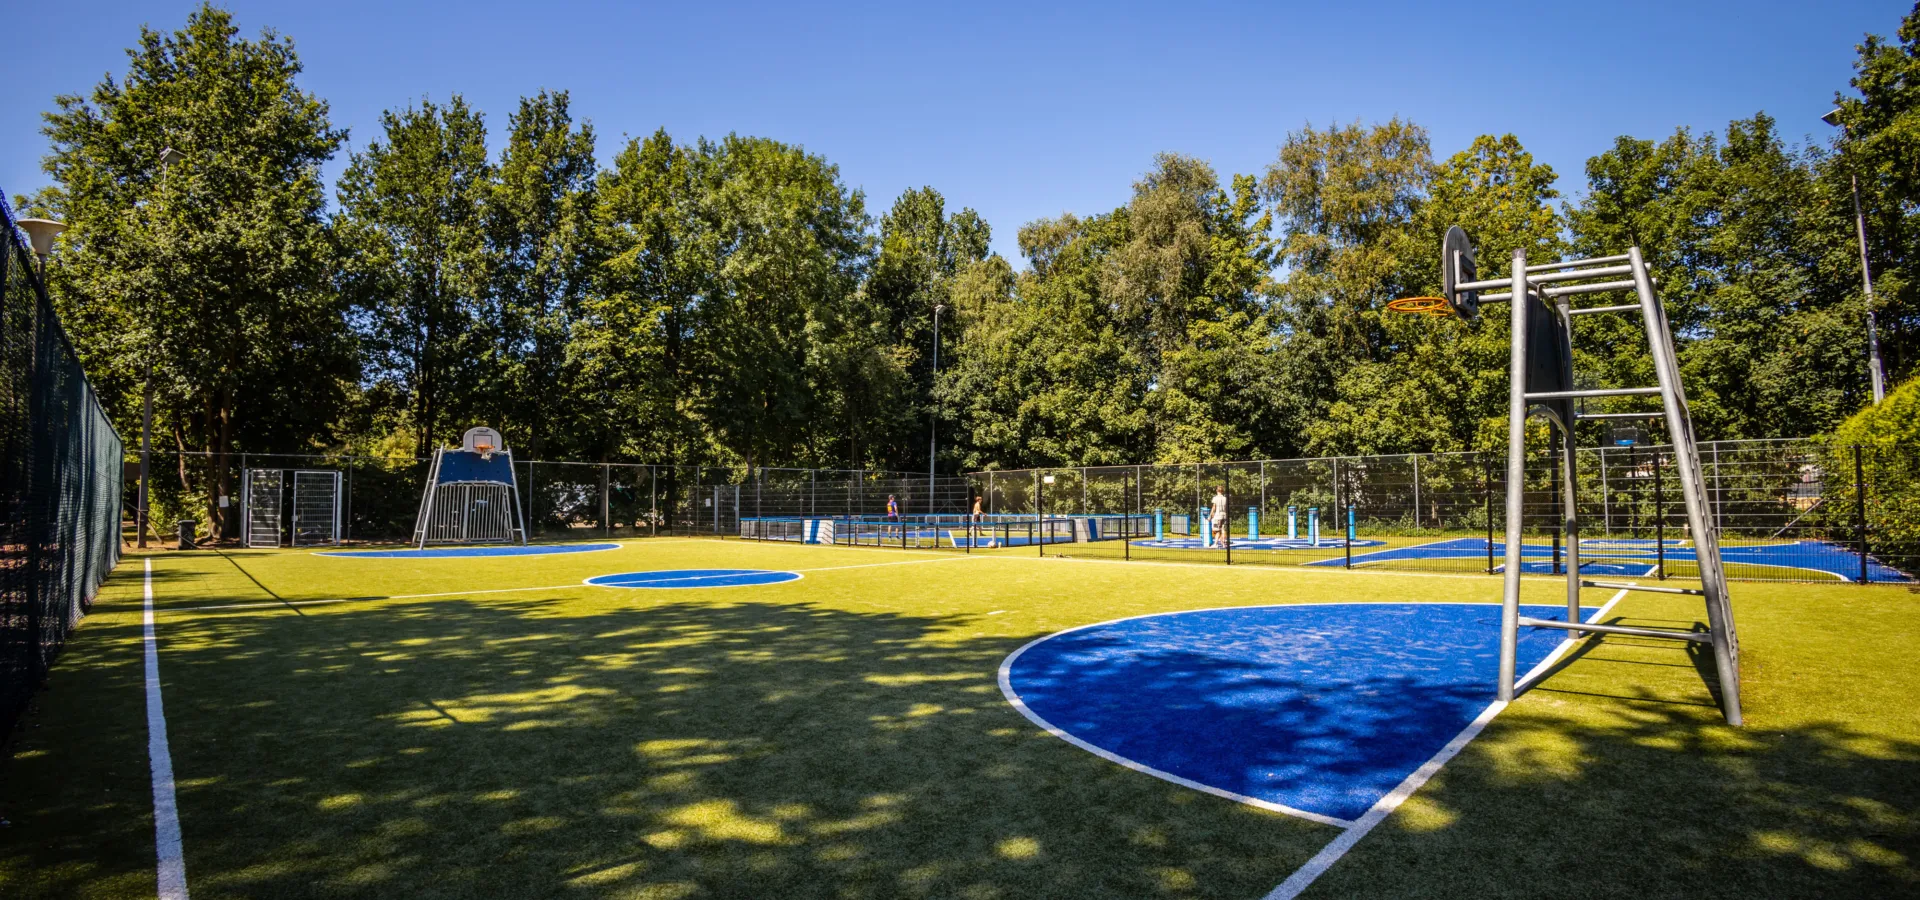 Vakantiepark Bergumermeer- sportveld